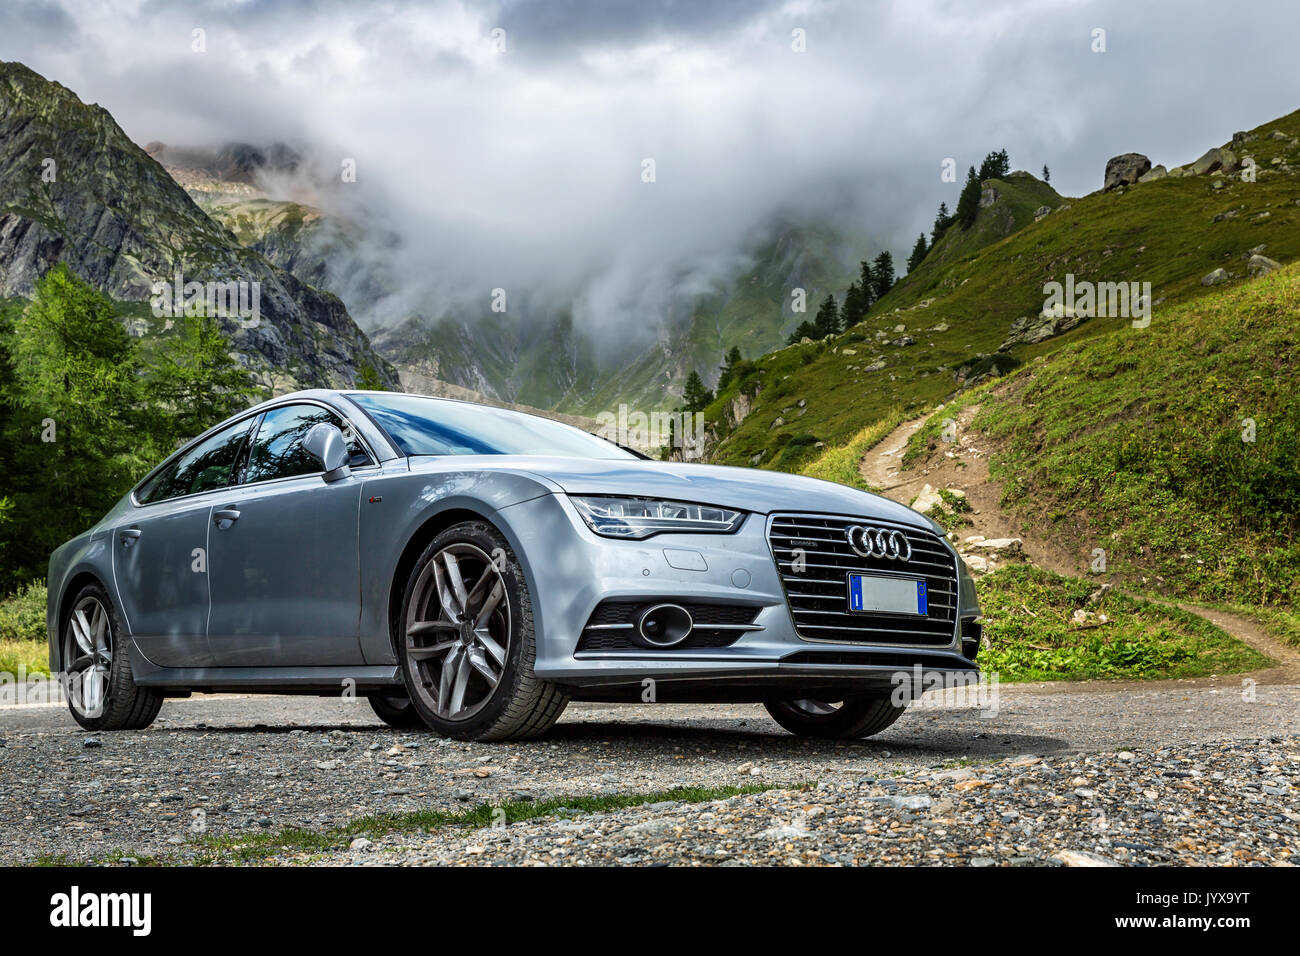 Audi A7 Quatro, Valle de Aosta, Aosta, Italia Foto de stock